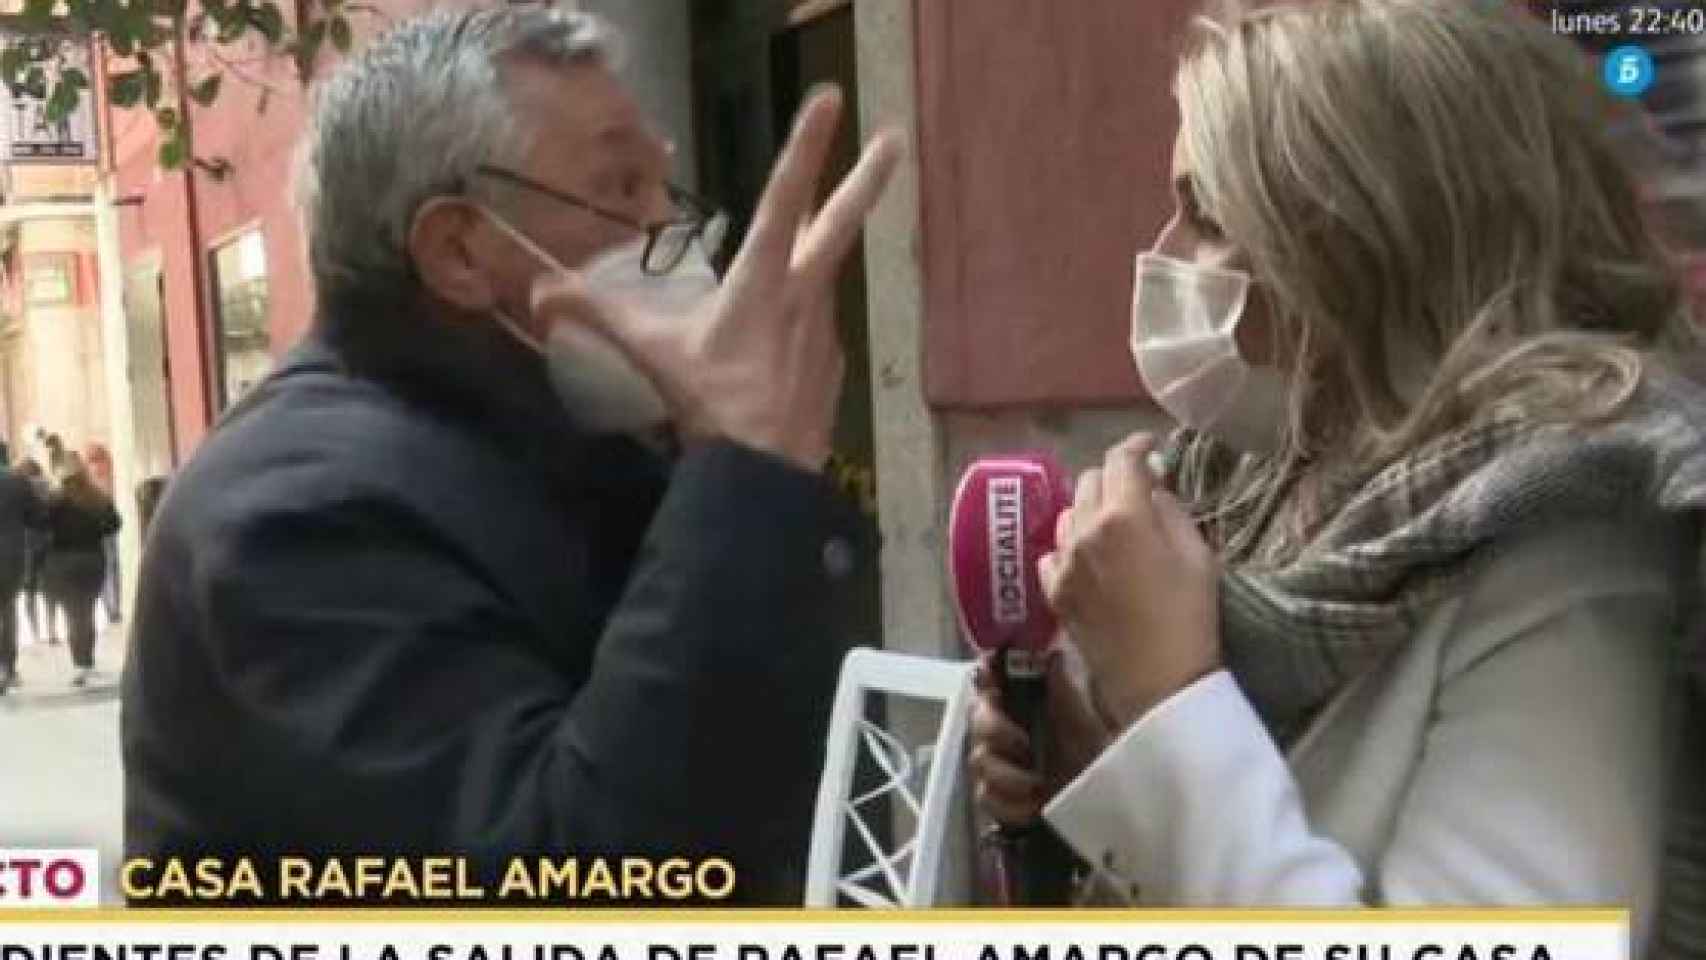 El padre de Rafael Amargo ha perseguido a la reportera para insultarla y llamar a la Policía.